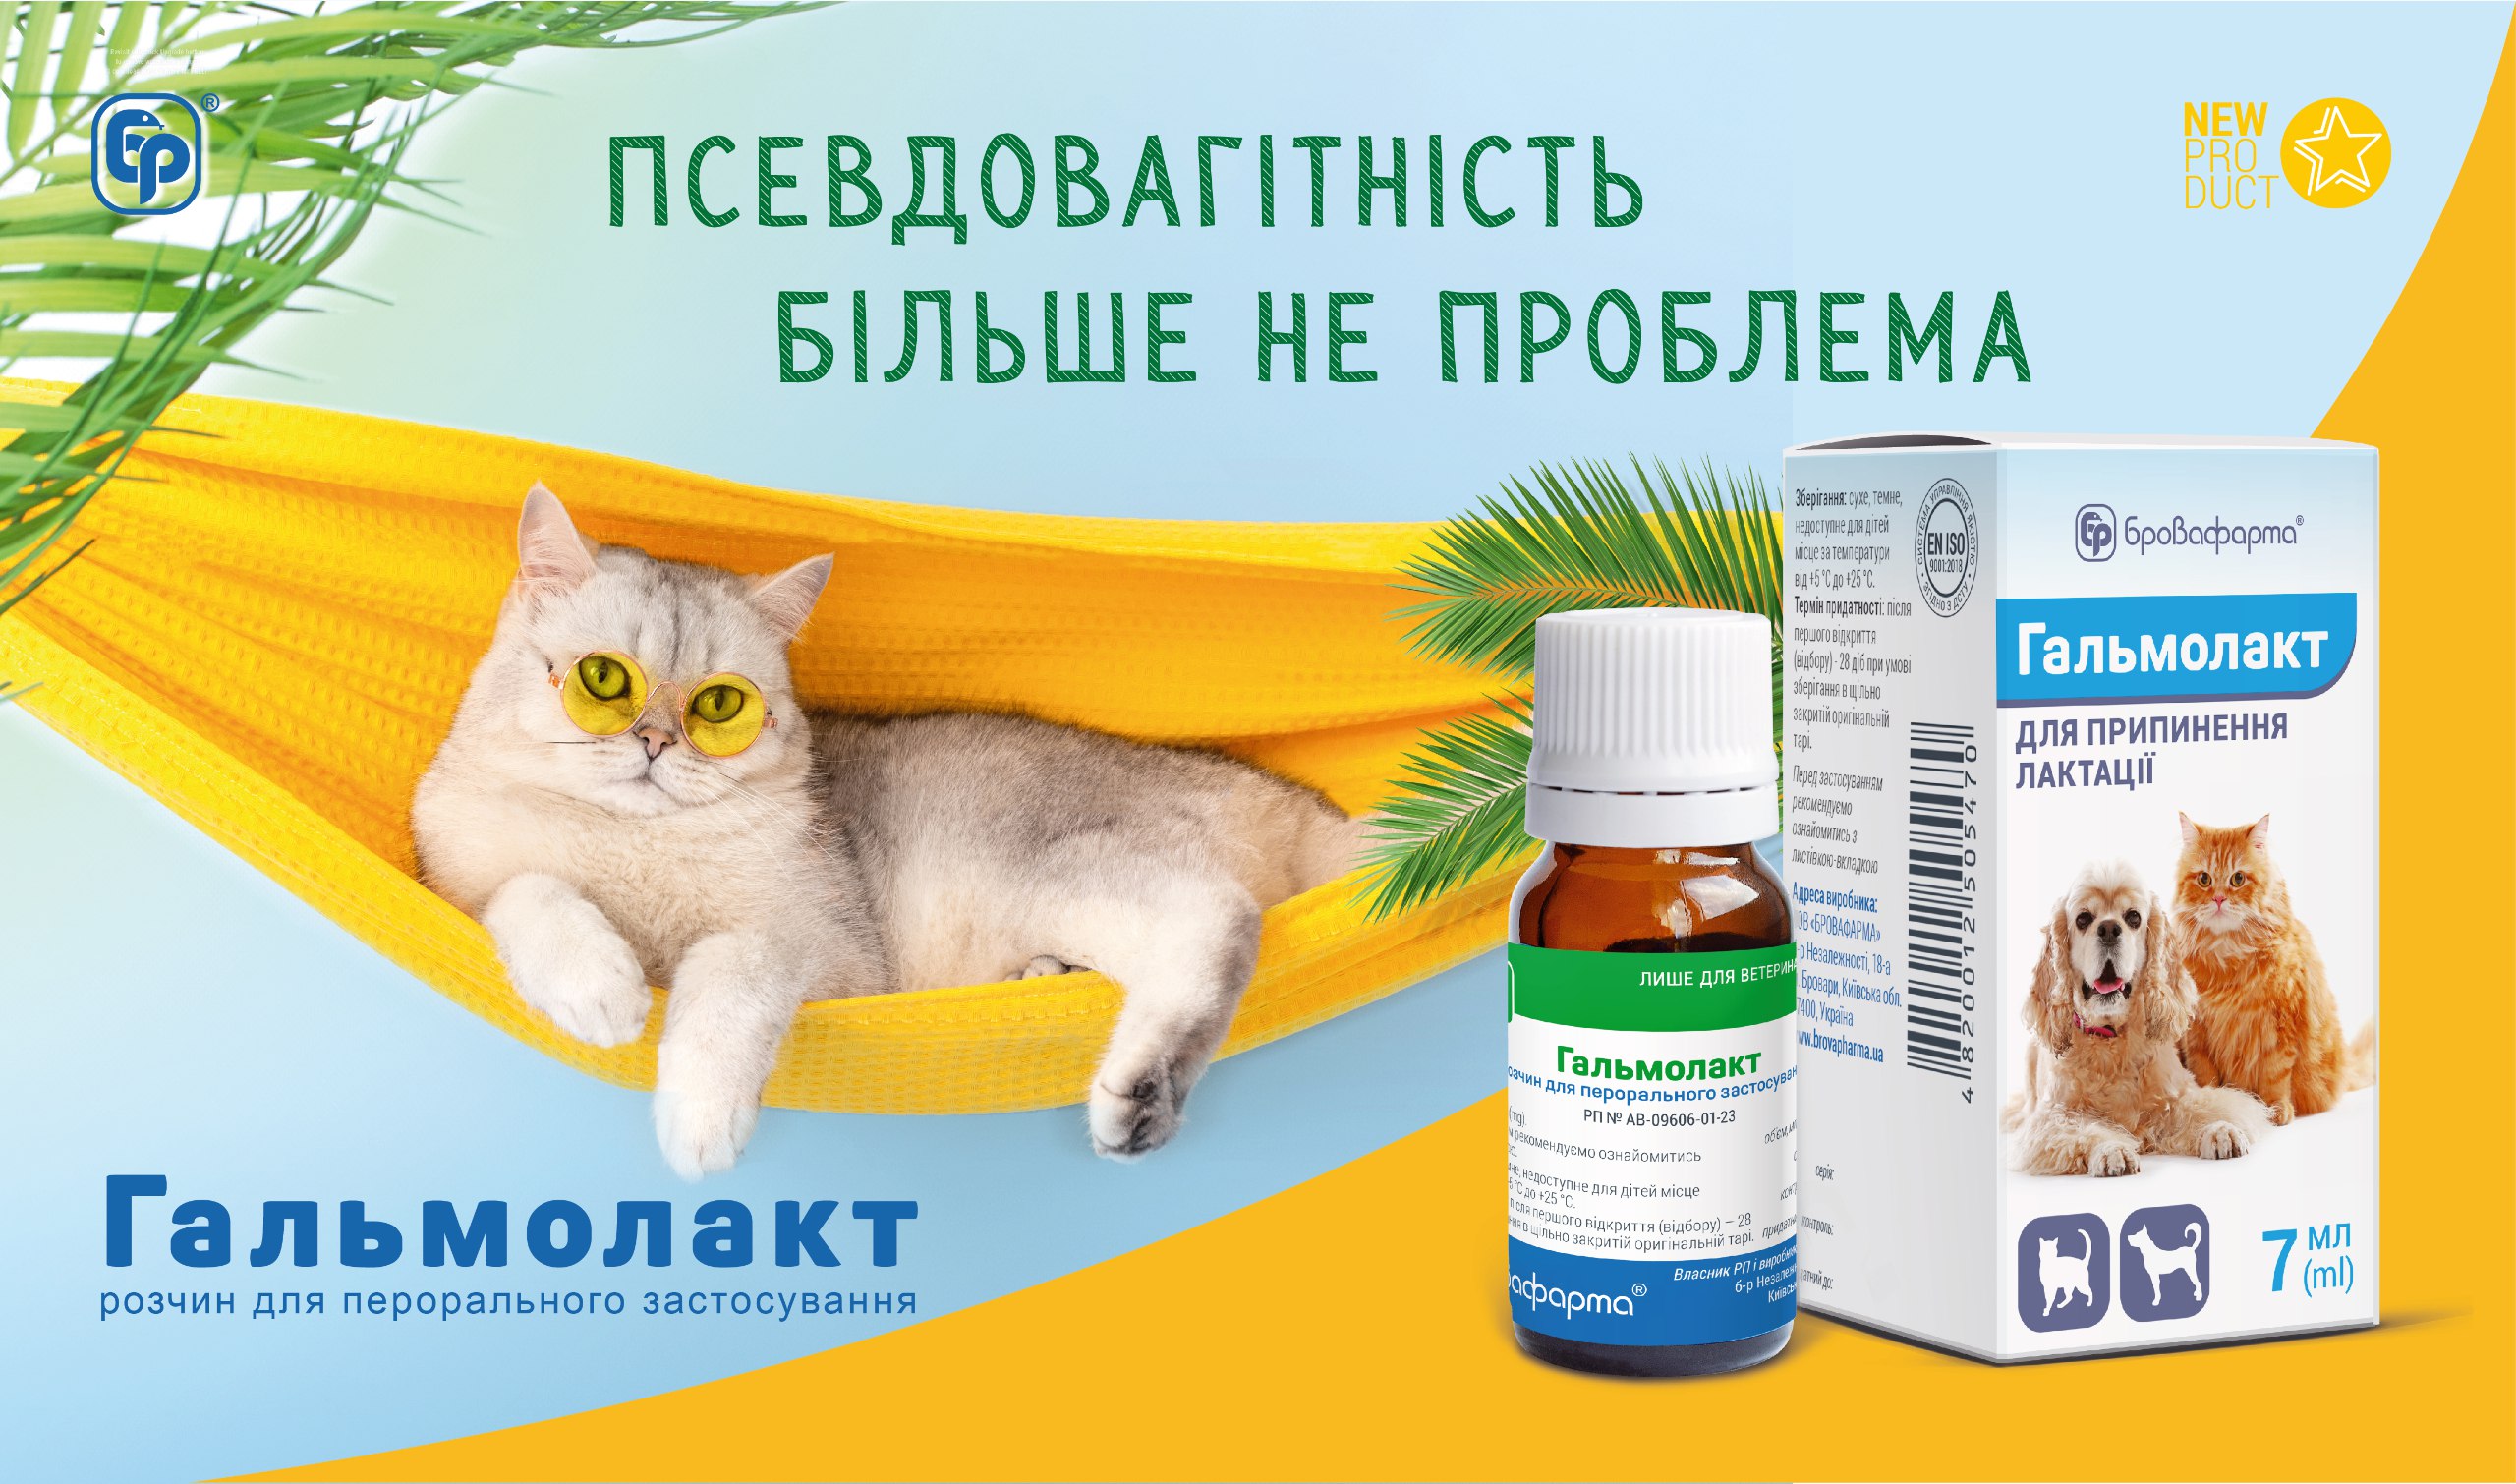 Гальмолакт — препарат для припинення лактації у котів та собак